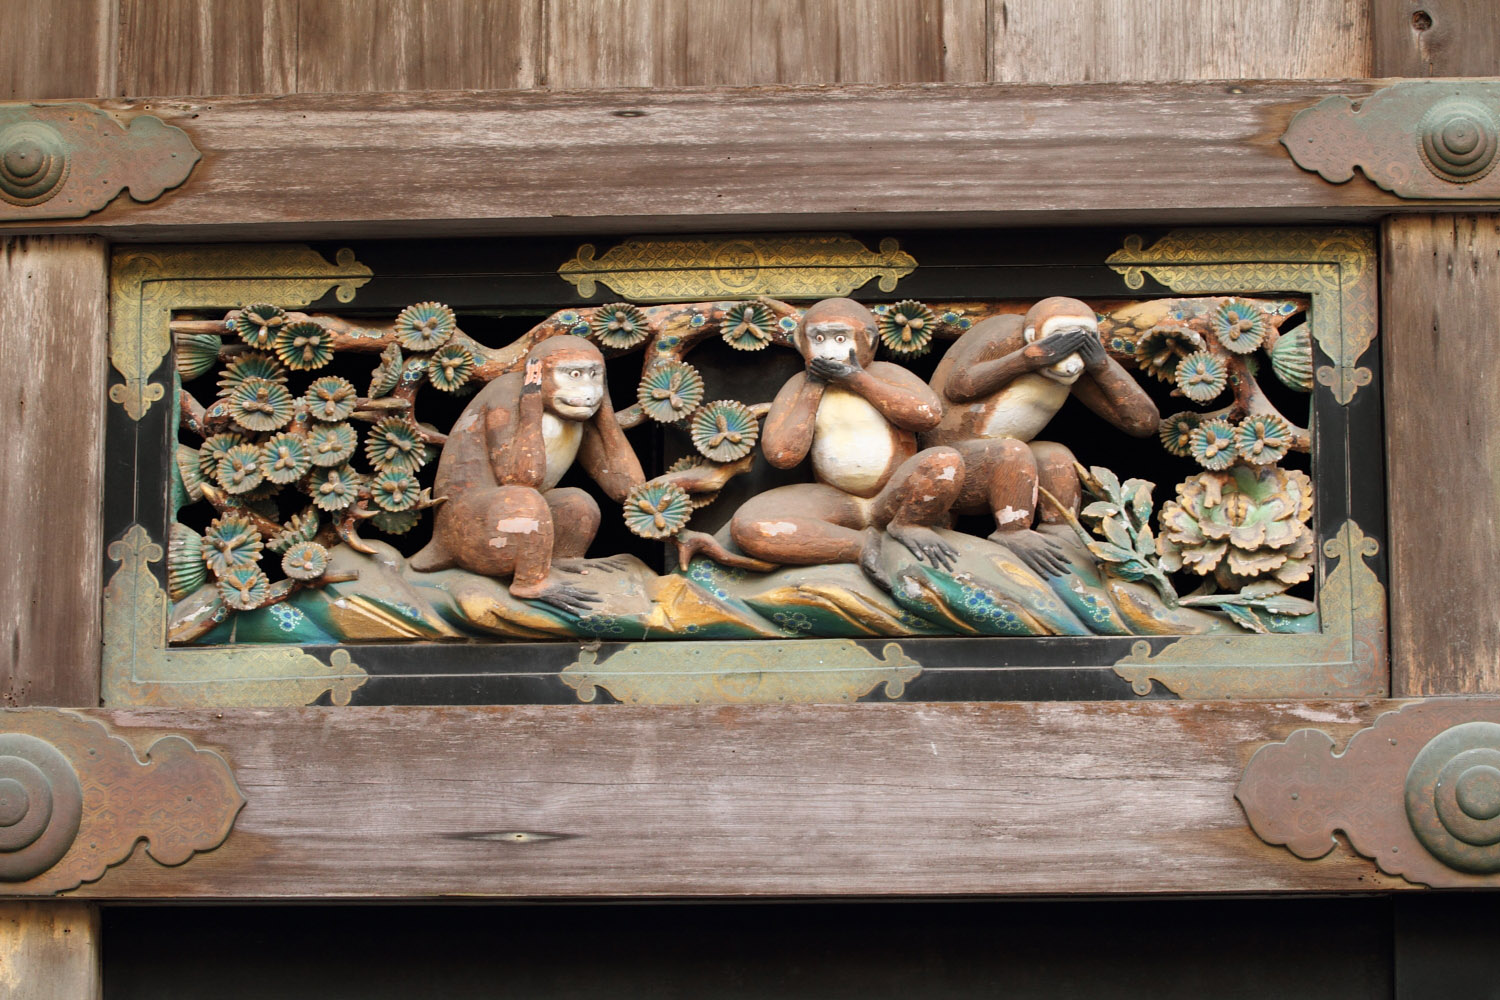 Los tres monos sabios de Nikko: no oyen, no dicen, ni ven maldad